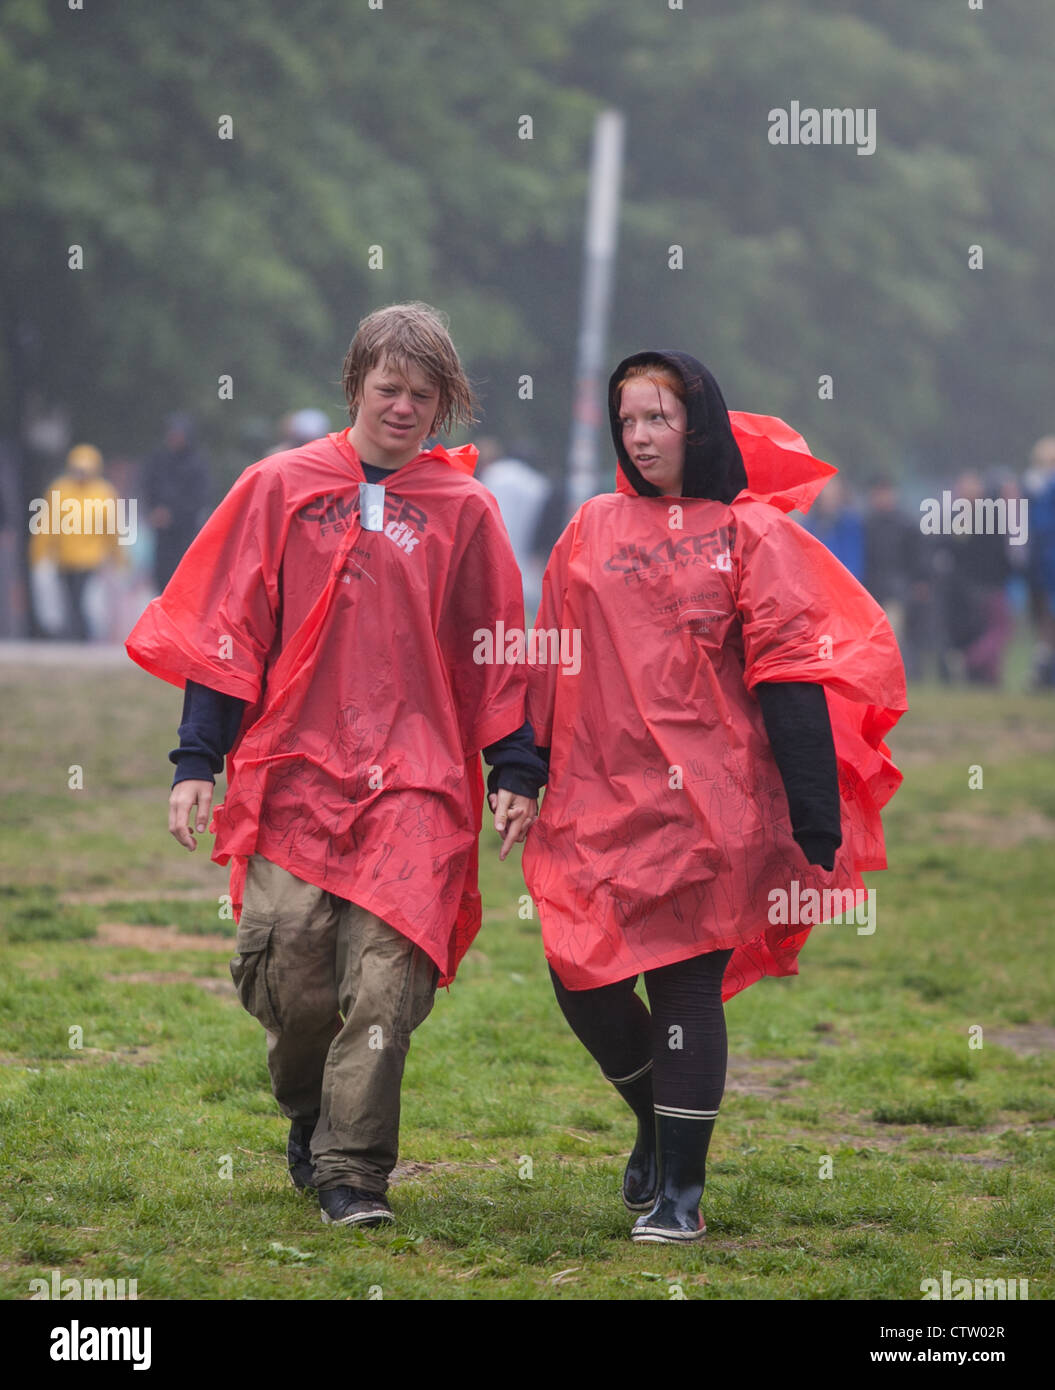 Deux jeunes filles à humide à un festival de musique Banque D'Images